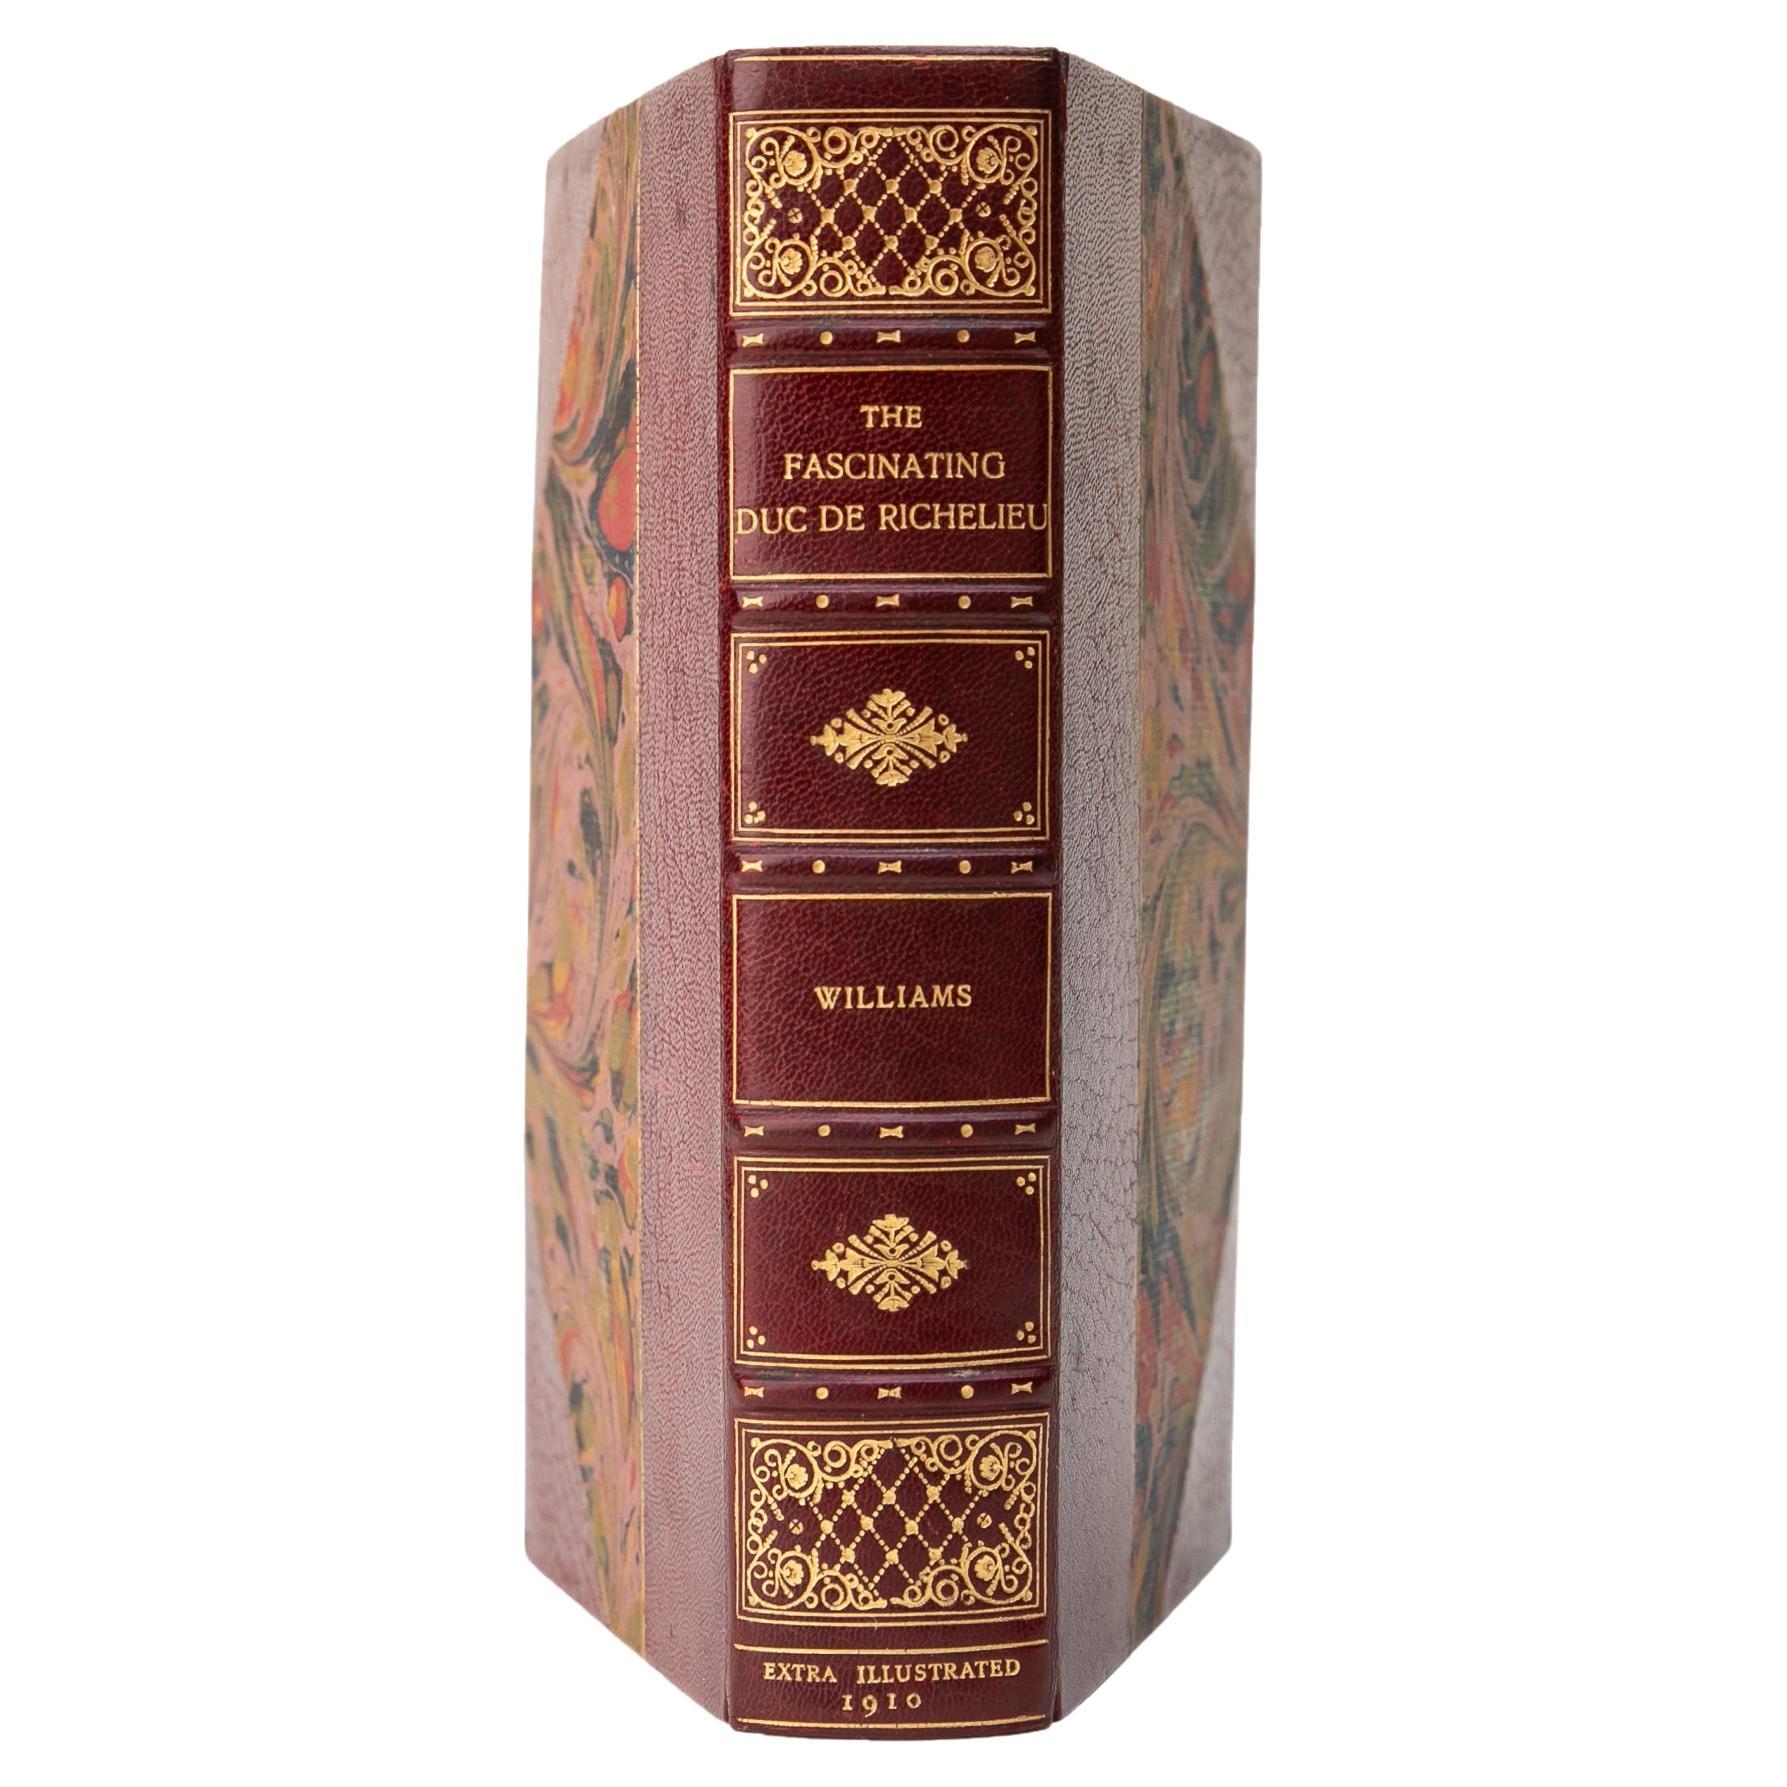 1 Volume. H. Noel Williams, The Fascinating Duc de Richelieu. For Sale